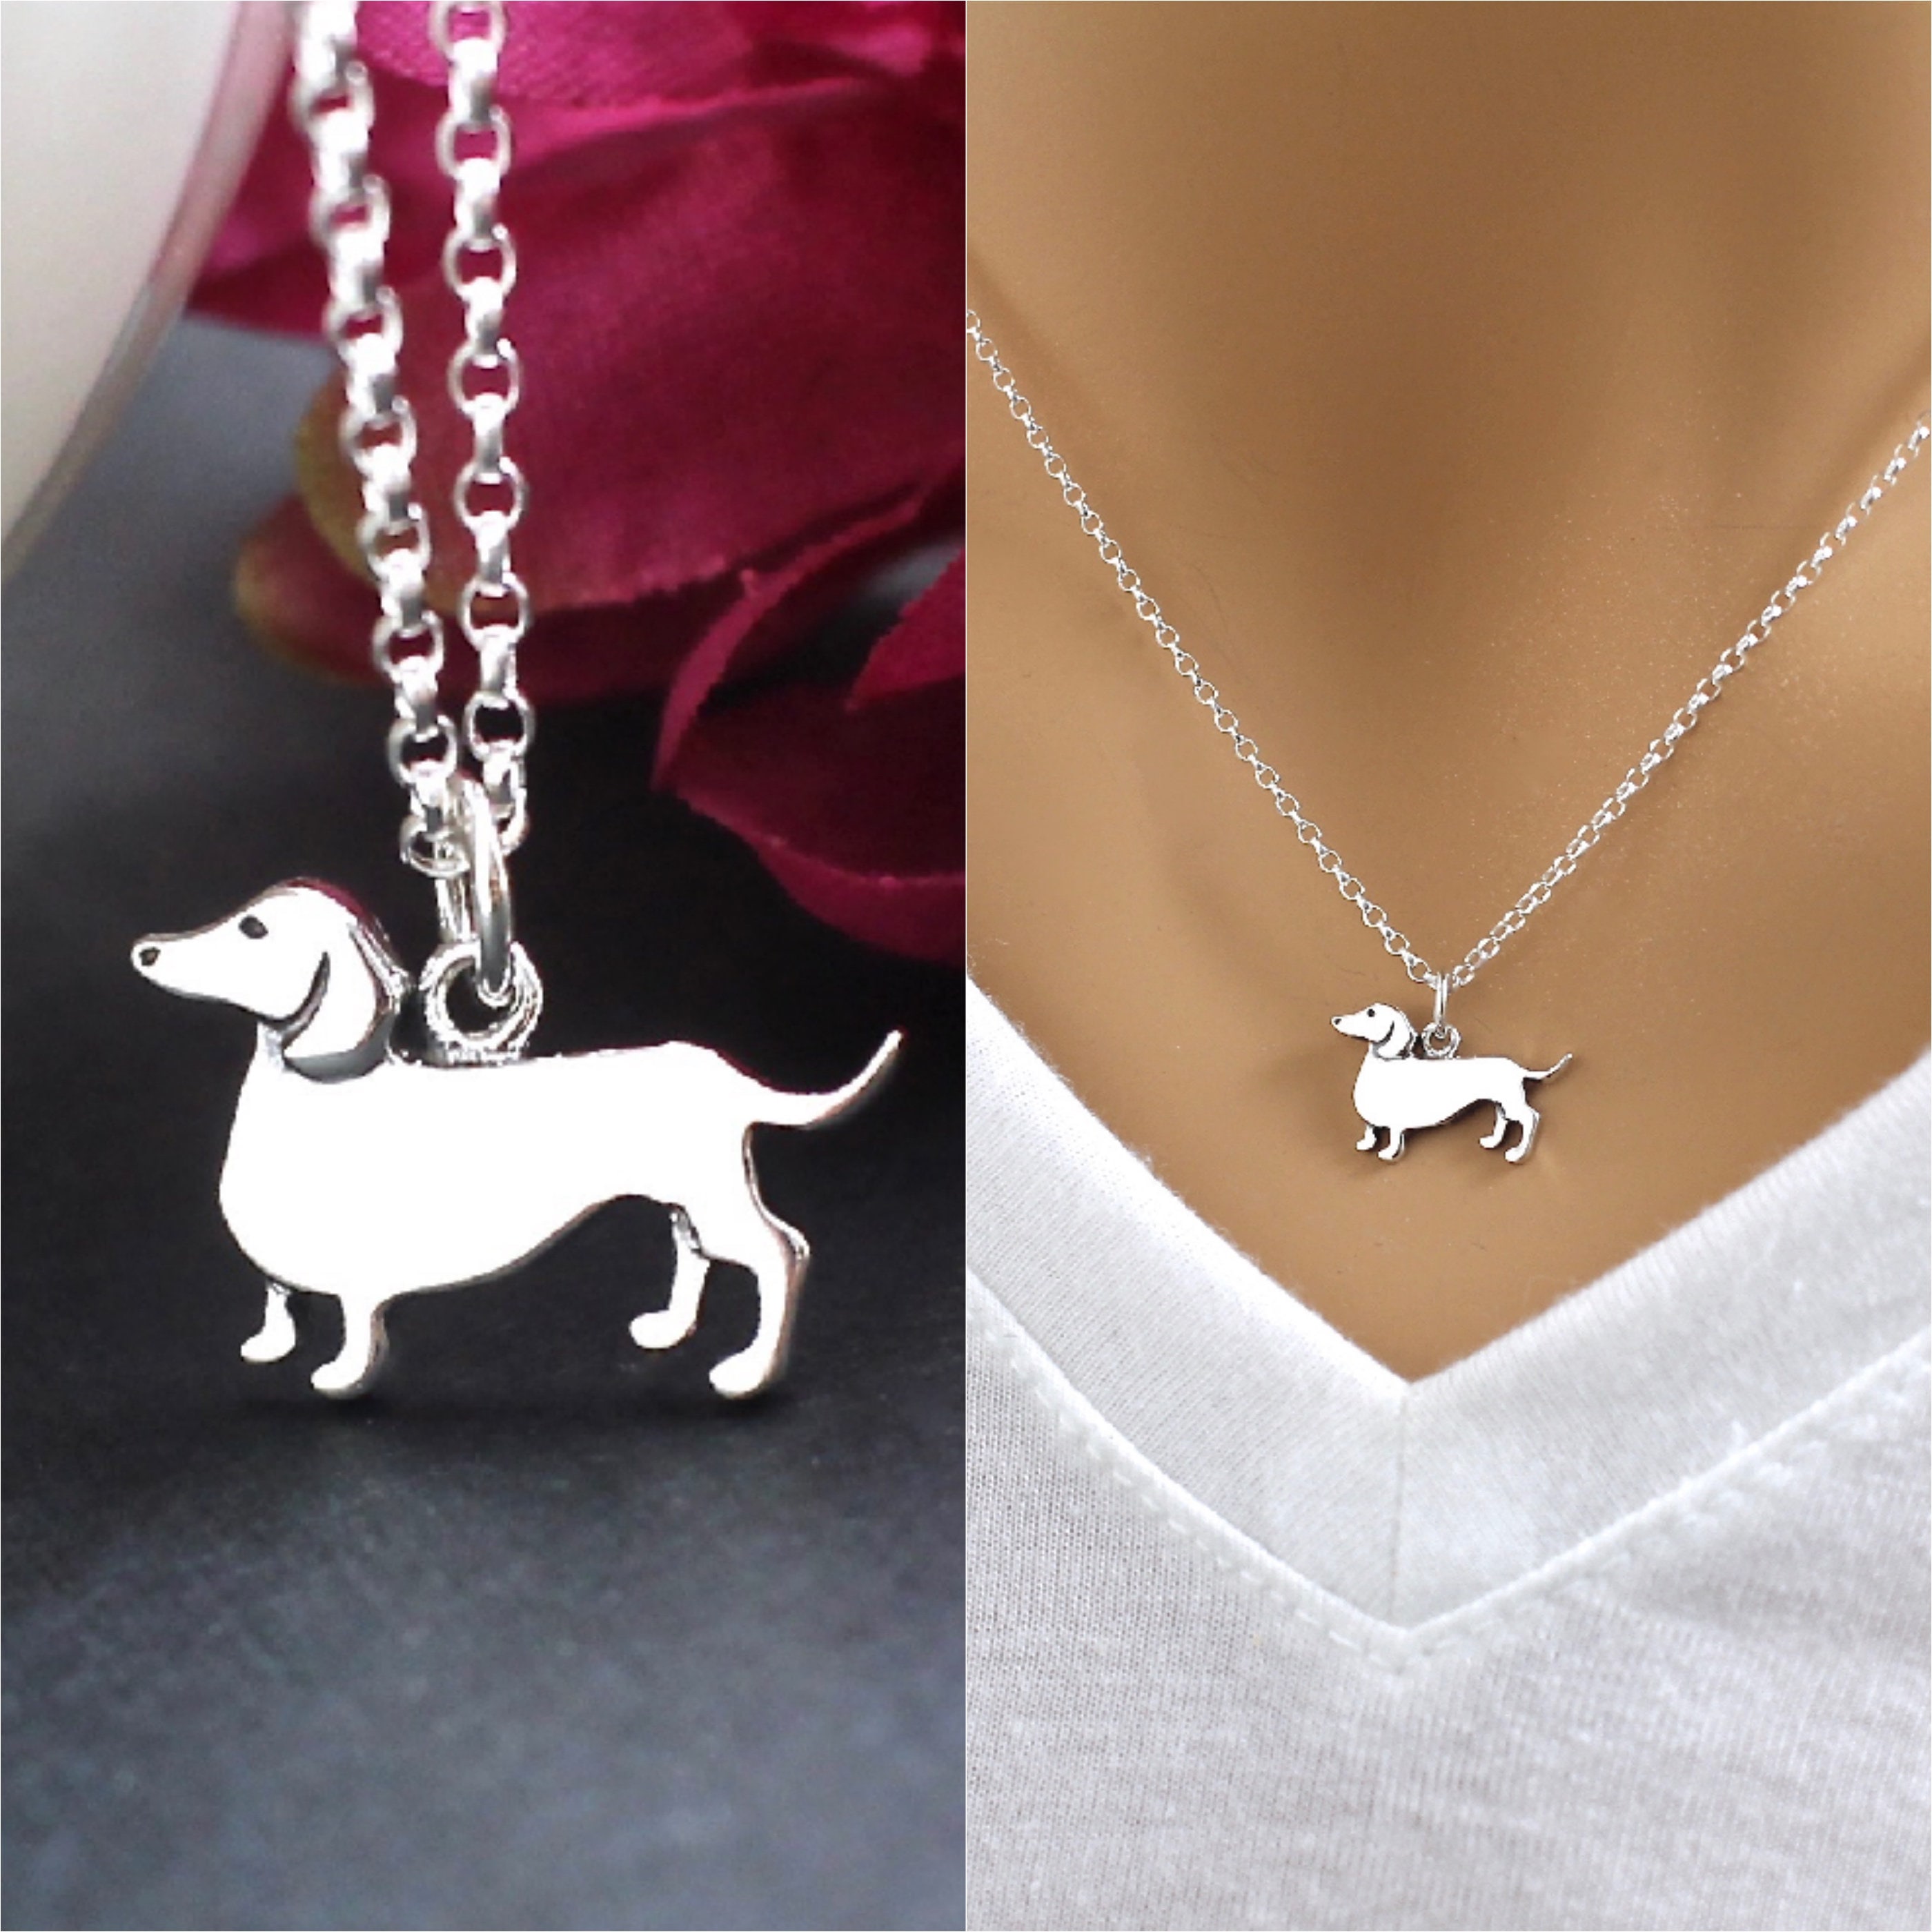 Buy Dachshund Necklace, Large Dachshund Necklace, Sausage Dog Necklace,  Silver Dog Necklace Online in India - Etsy